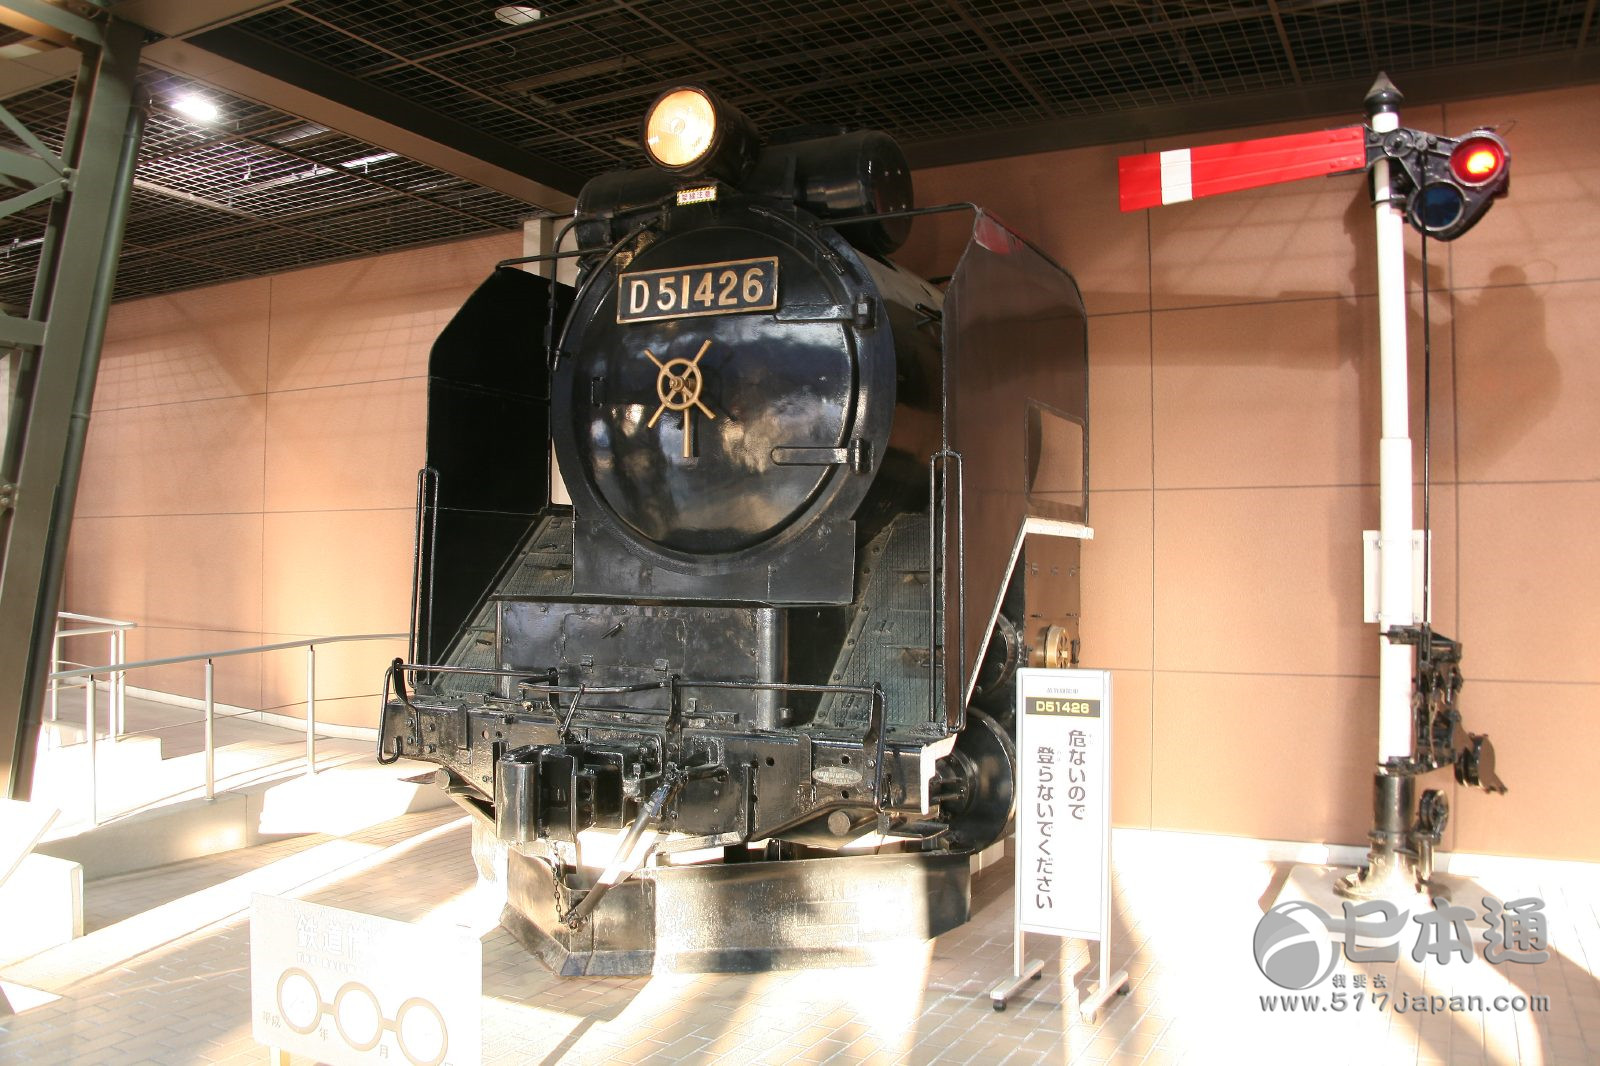 火车爱好者的天堂——埼玉县铁路博物馆